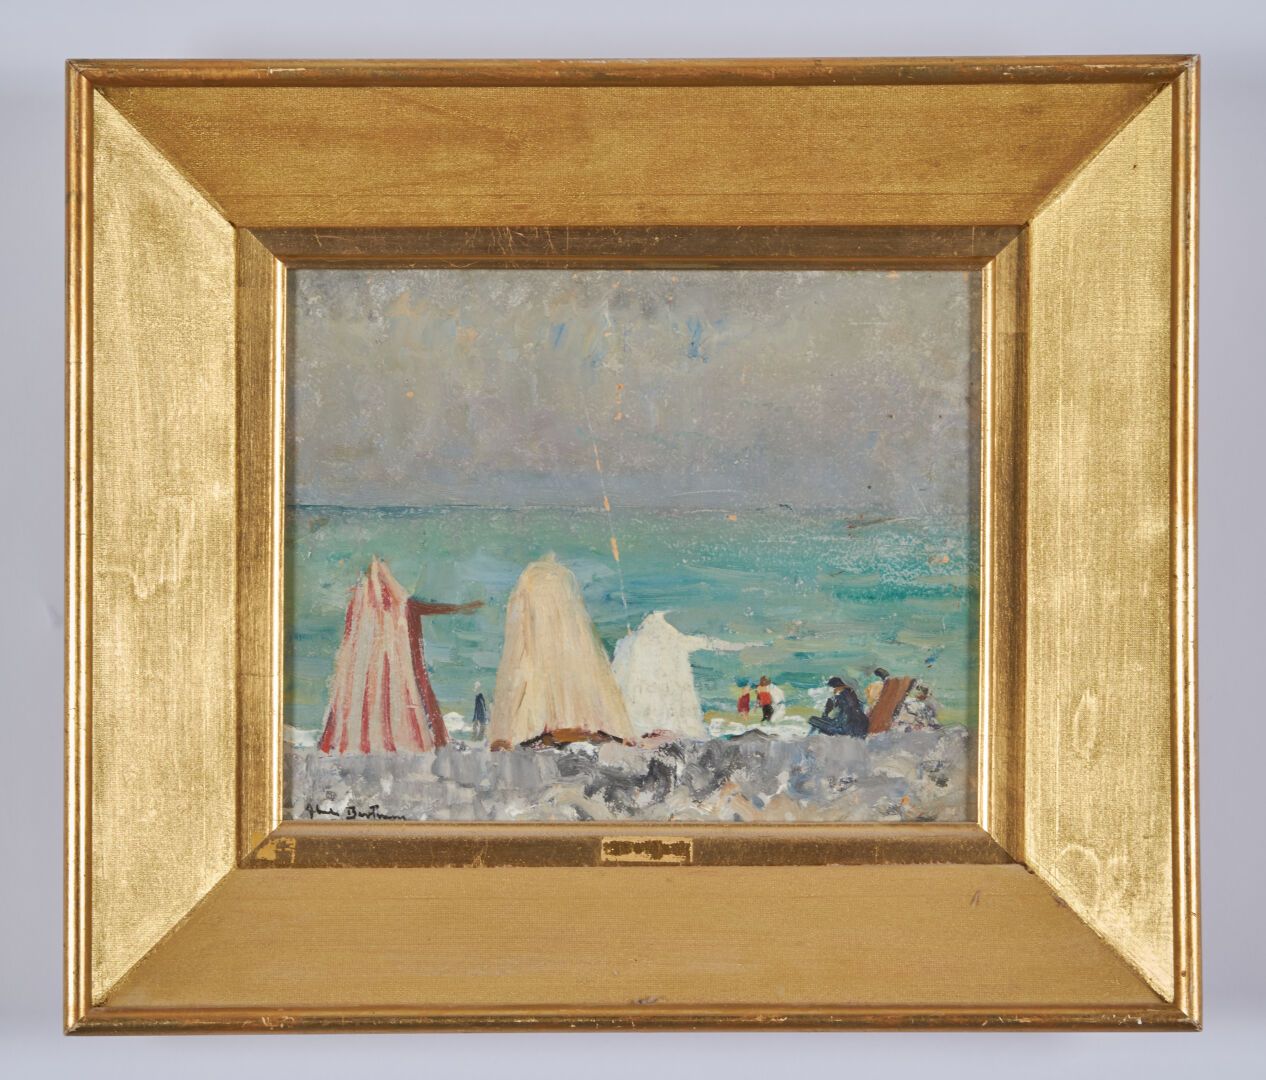 Null 贝特伦-阿贝尔(1871-1954)

"海滩"。

纸板上的油画，装在面板上，左下角有签名

20,5 x 25,5 cm

(可见划痕)